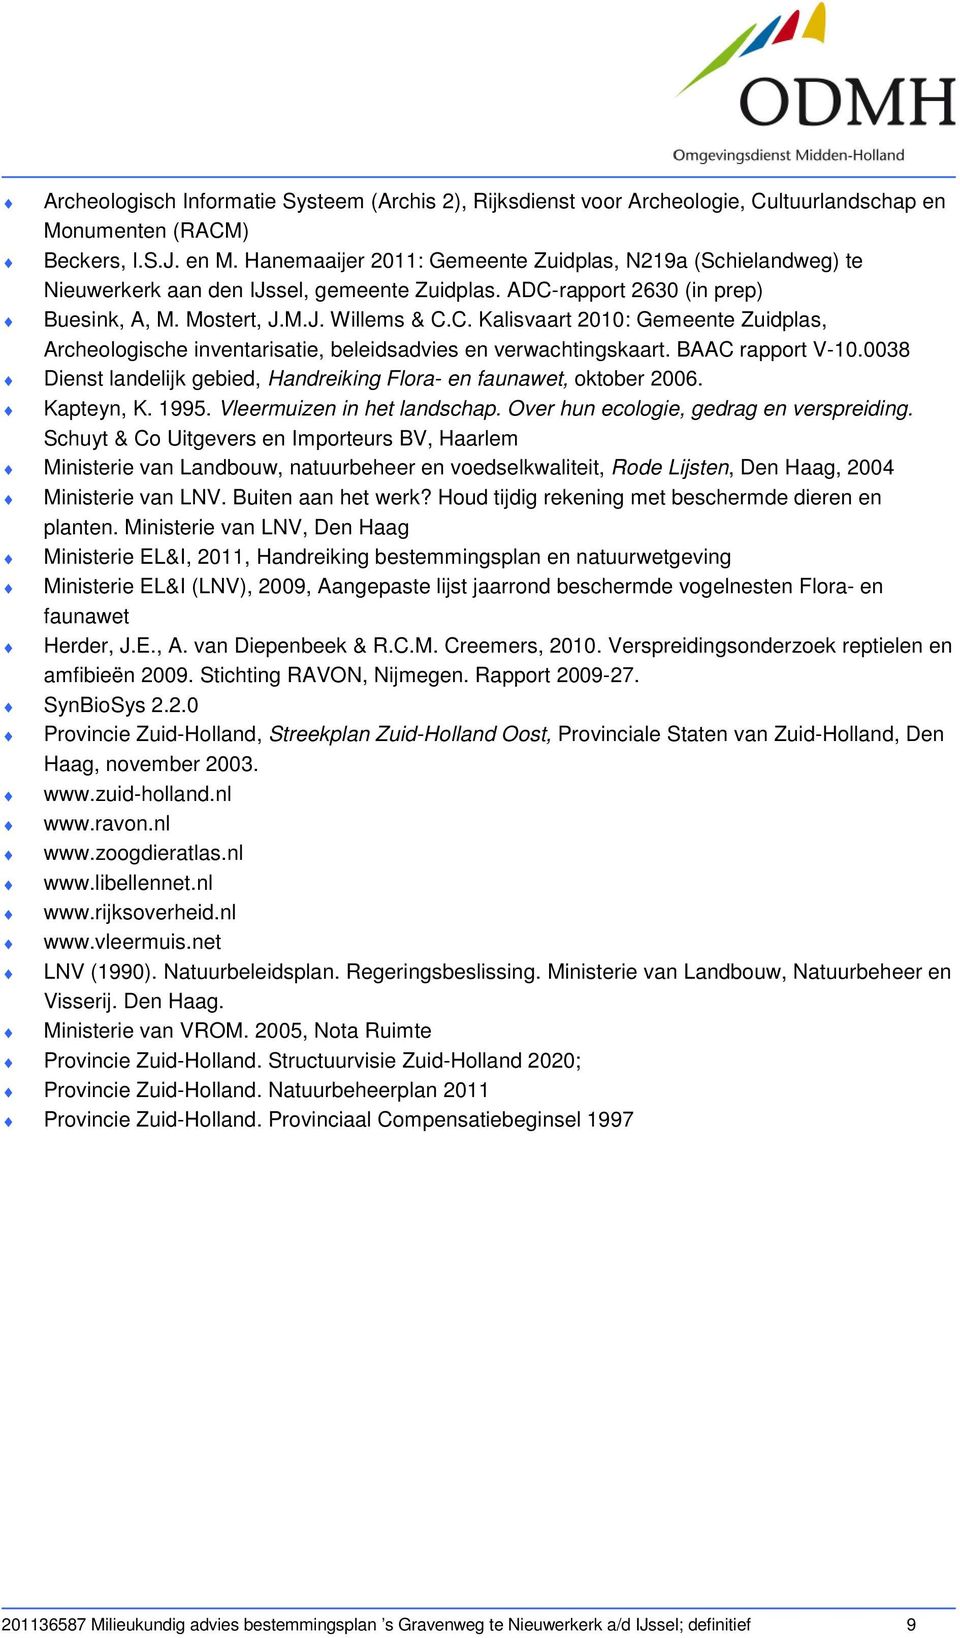 M.J. Willems & C.C. Kalisvaart 2010: Gemeente Zuidplas, Archeologische inventarisatie, beleidsadvies en verwachtingskaart. BAAC rapport V-10.